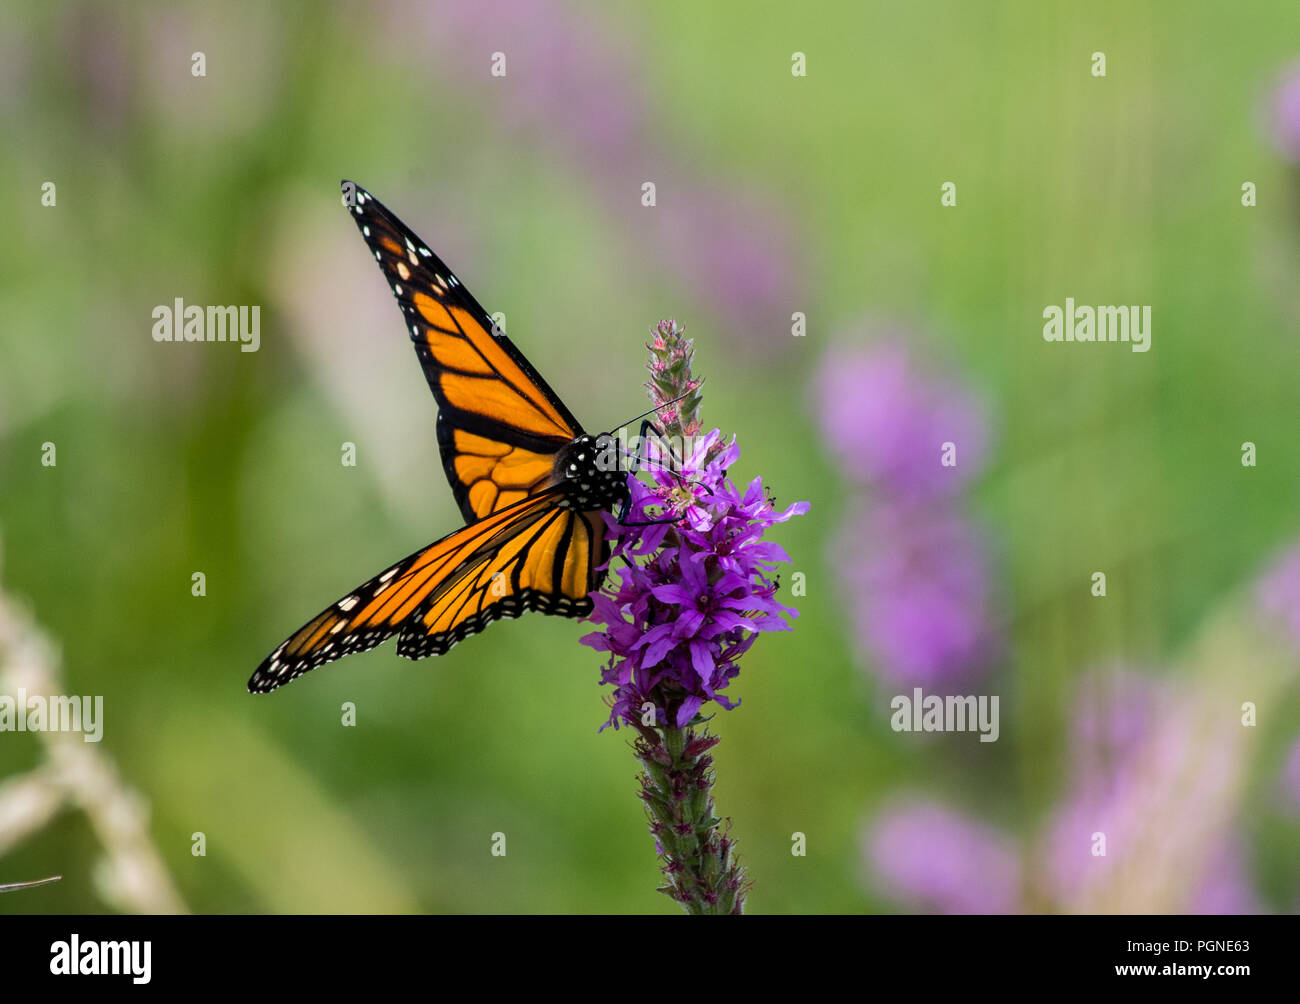 Monarch Butterfly Collection Framed Butterflies Danaus Plexippus Set Of Four